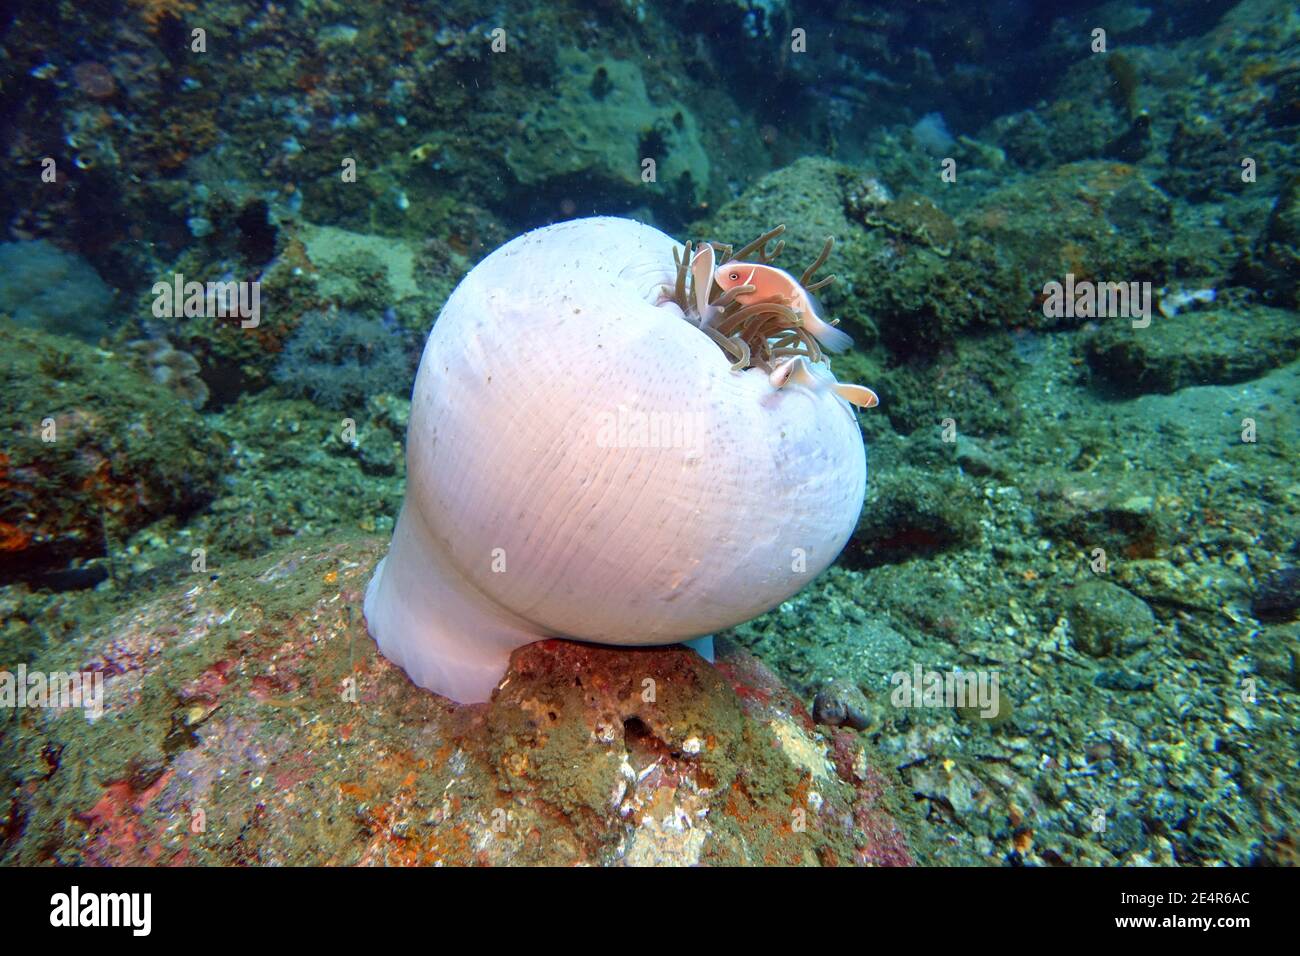 Halsband-Anemonenfisch oder Rosa Weißrückenanemonenfisch (Amphiprion perideraion) auf einer fast geschlossenen Prachtanemone (Heteractis magnifica), L. Foto de stock